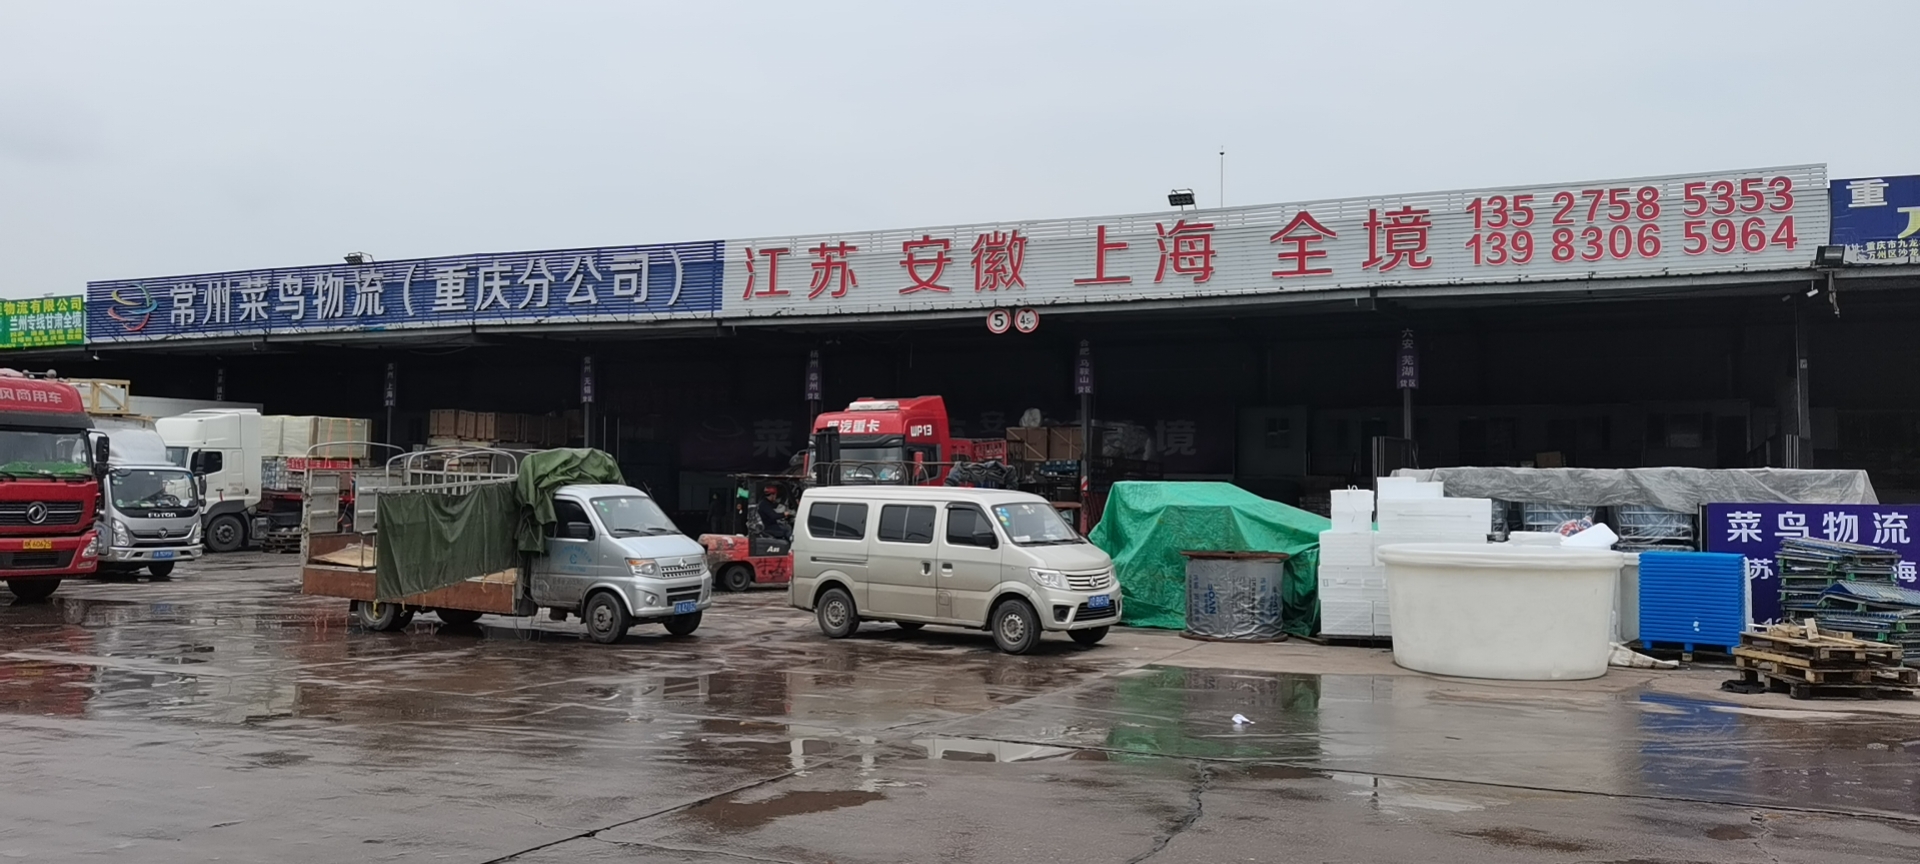 重庆至上海整车运输 零担物流 专业货物运输 重庆到上海直达专线图片